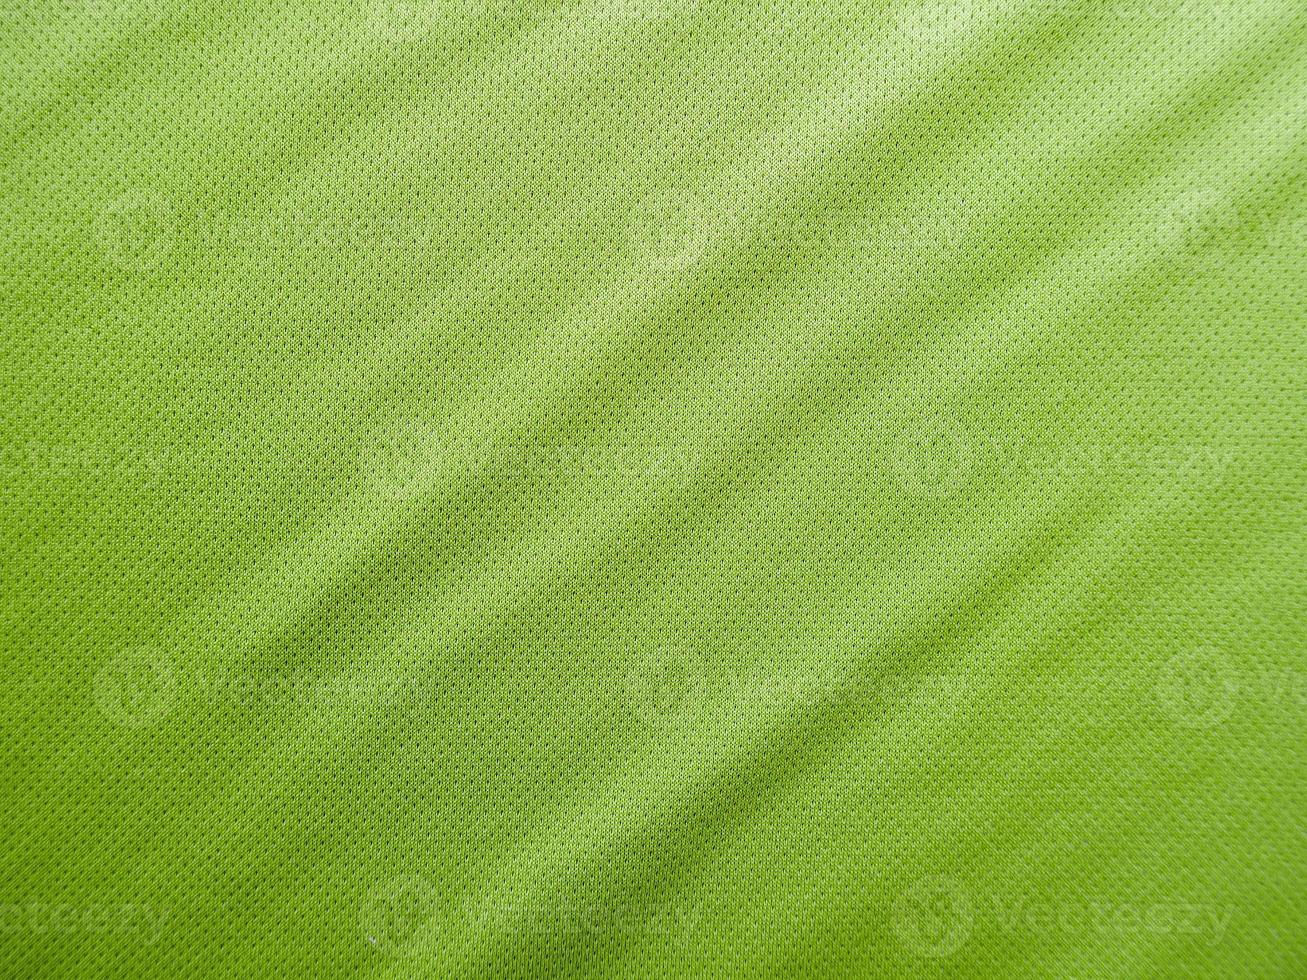 gröna sportkläder tyg jersey textur foto